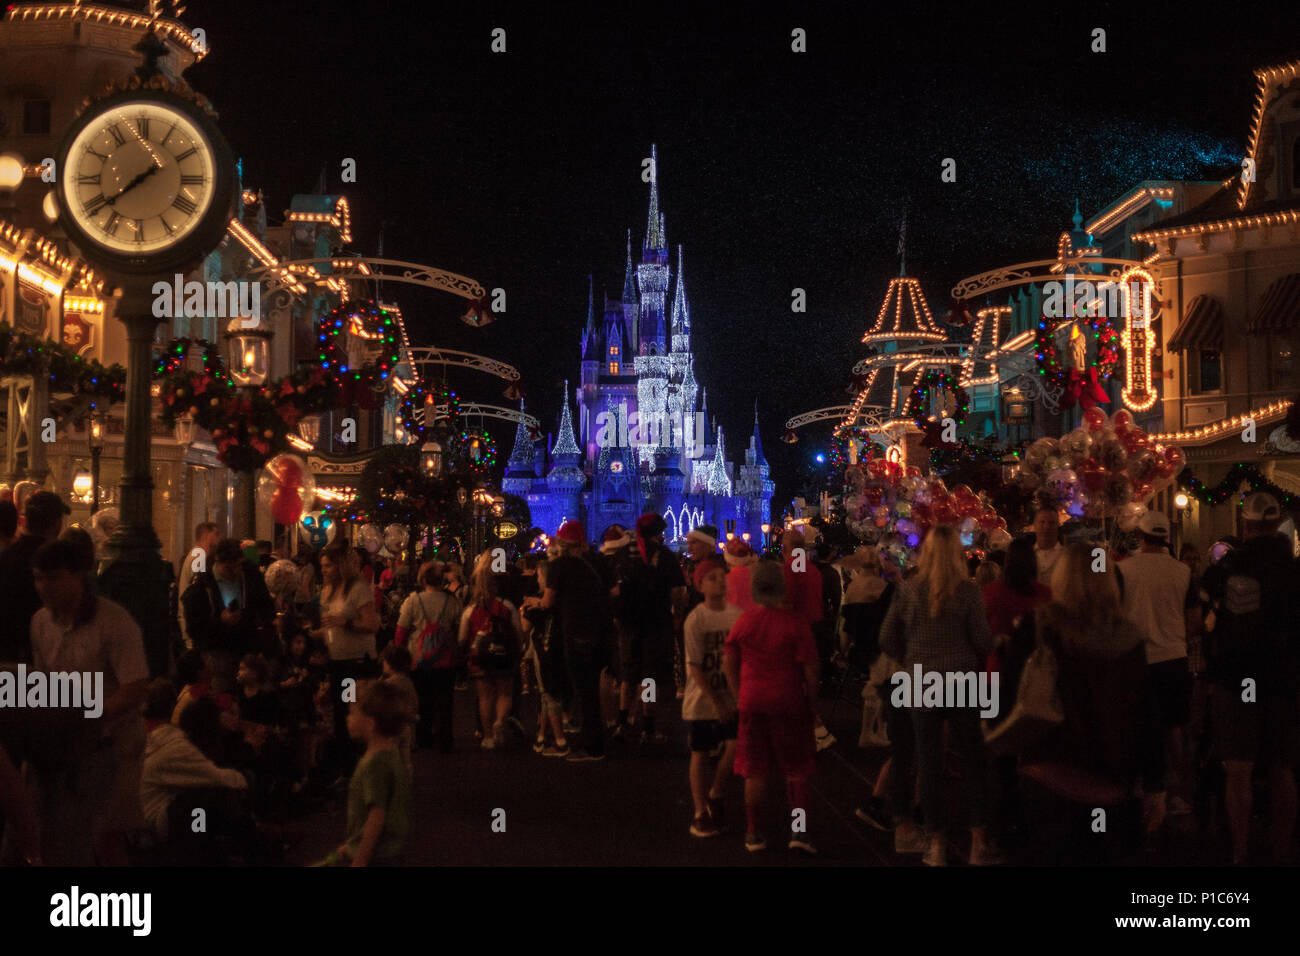 Magic Kingdom at night - Mickey's Very Merry Christmas Party Stock Photo